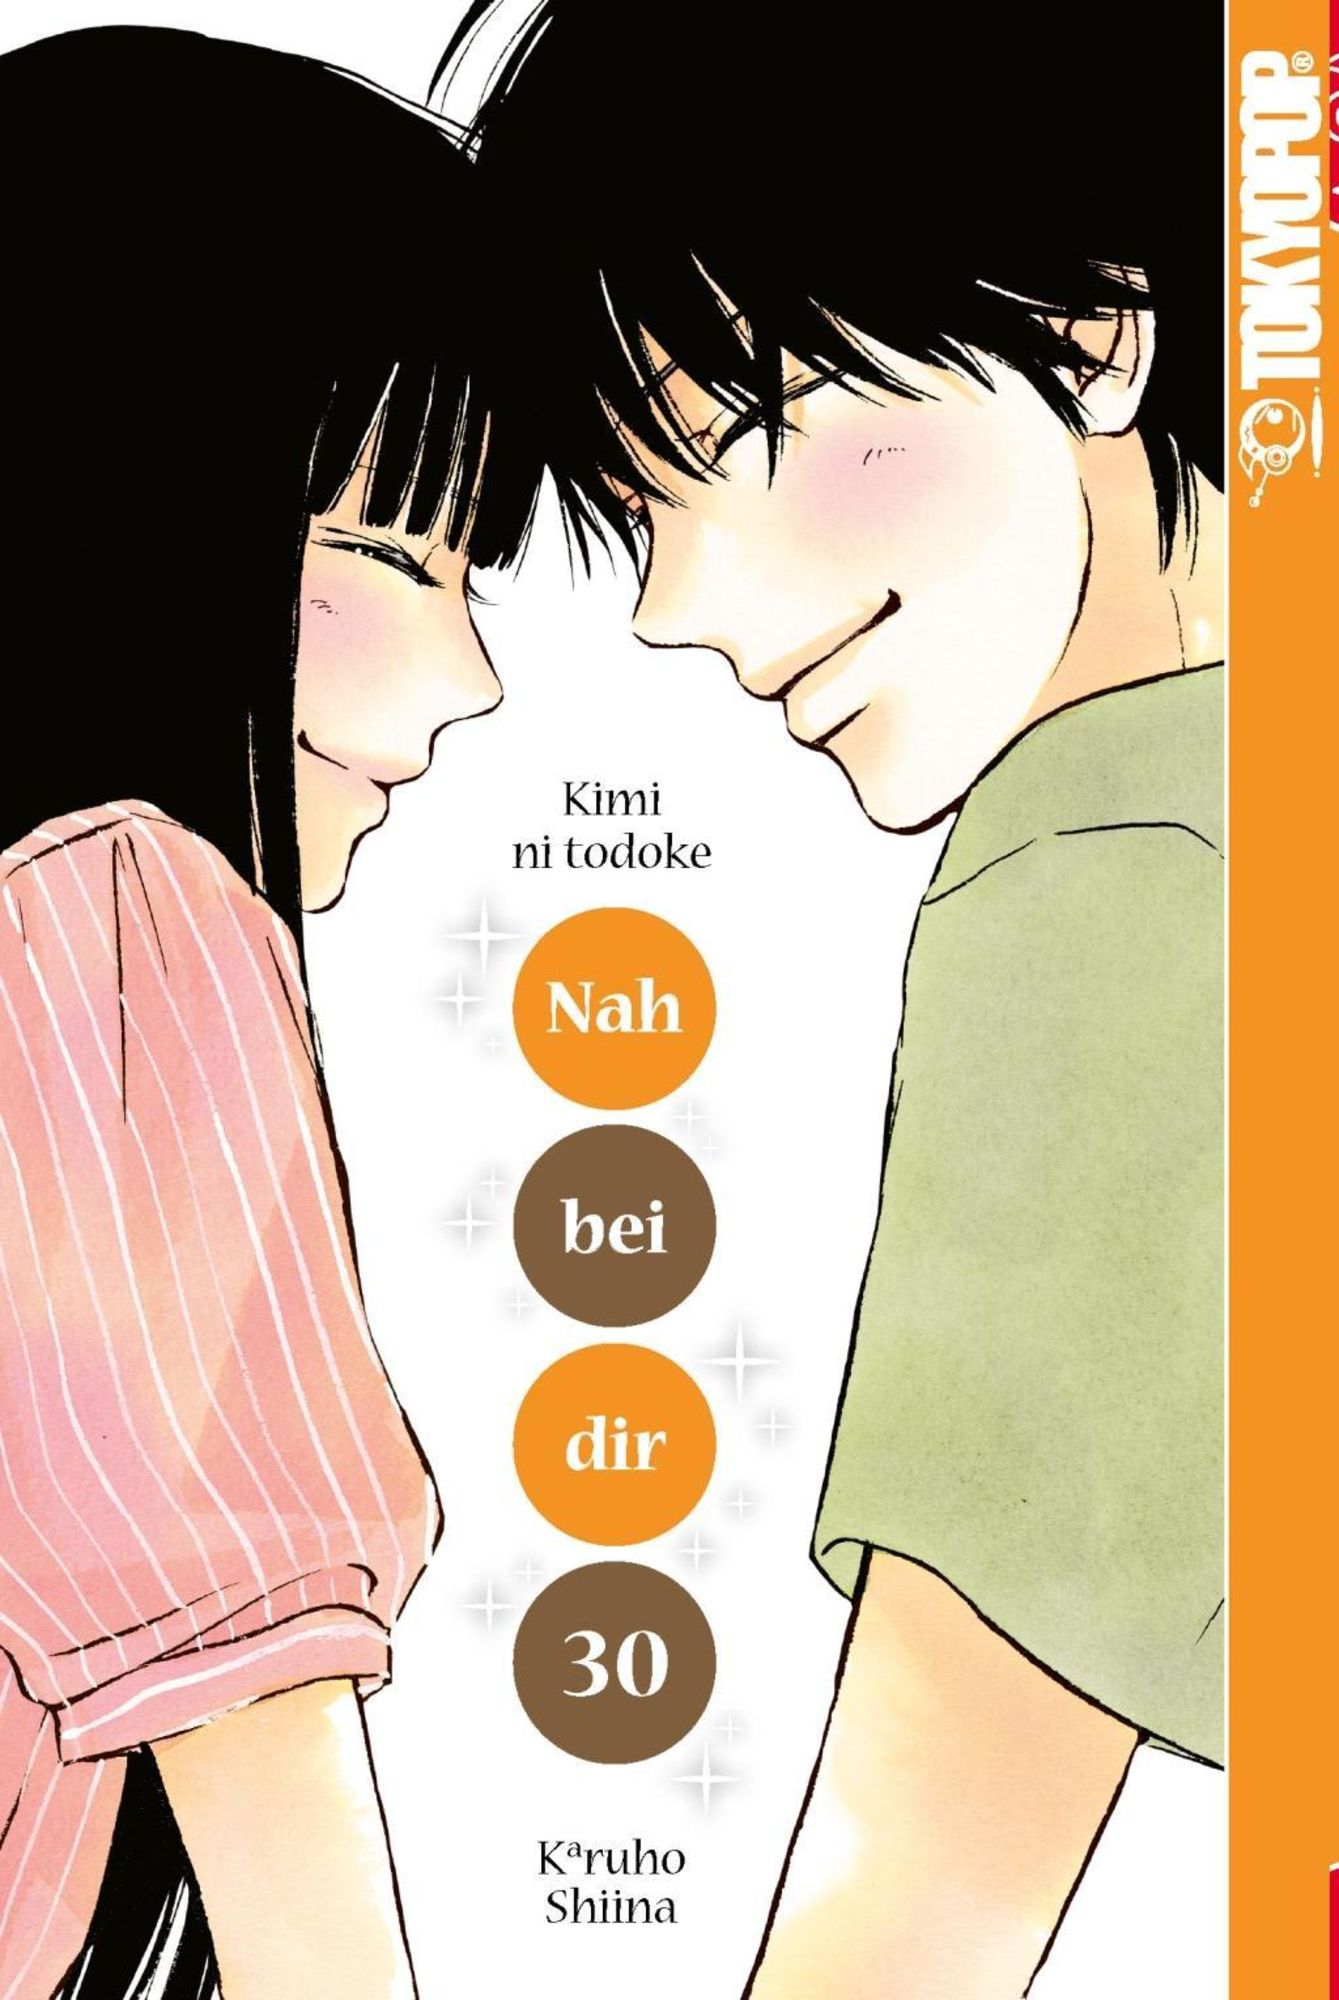 Kimi Ni Todoke Volume 30 Nah bei dir - Kimi ni todoke 30' von 'Karuho Shiina' - Buch -  '978-3-8420-4944-4'